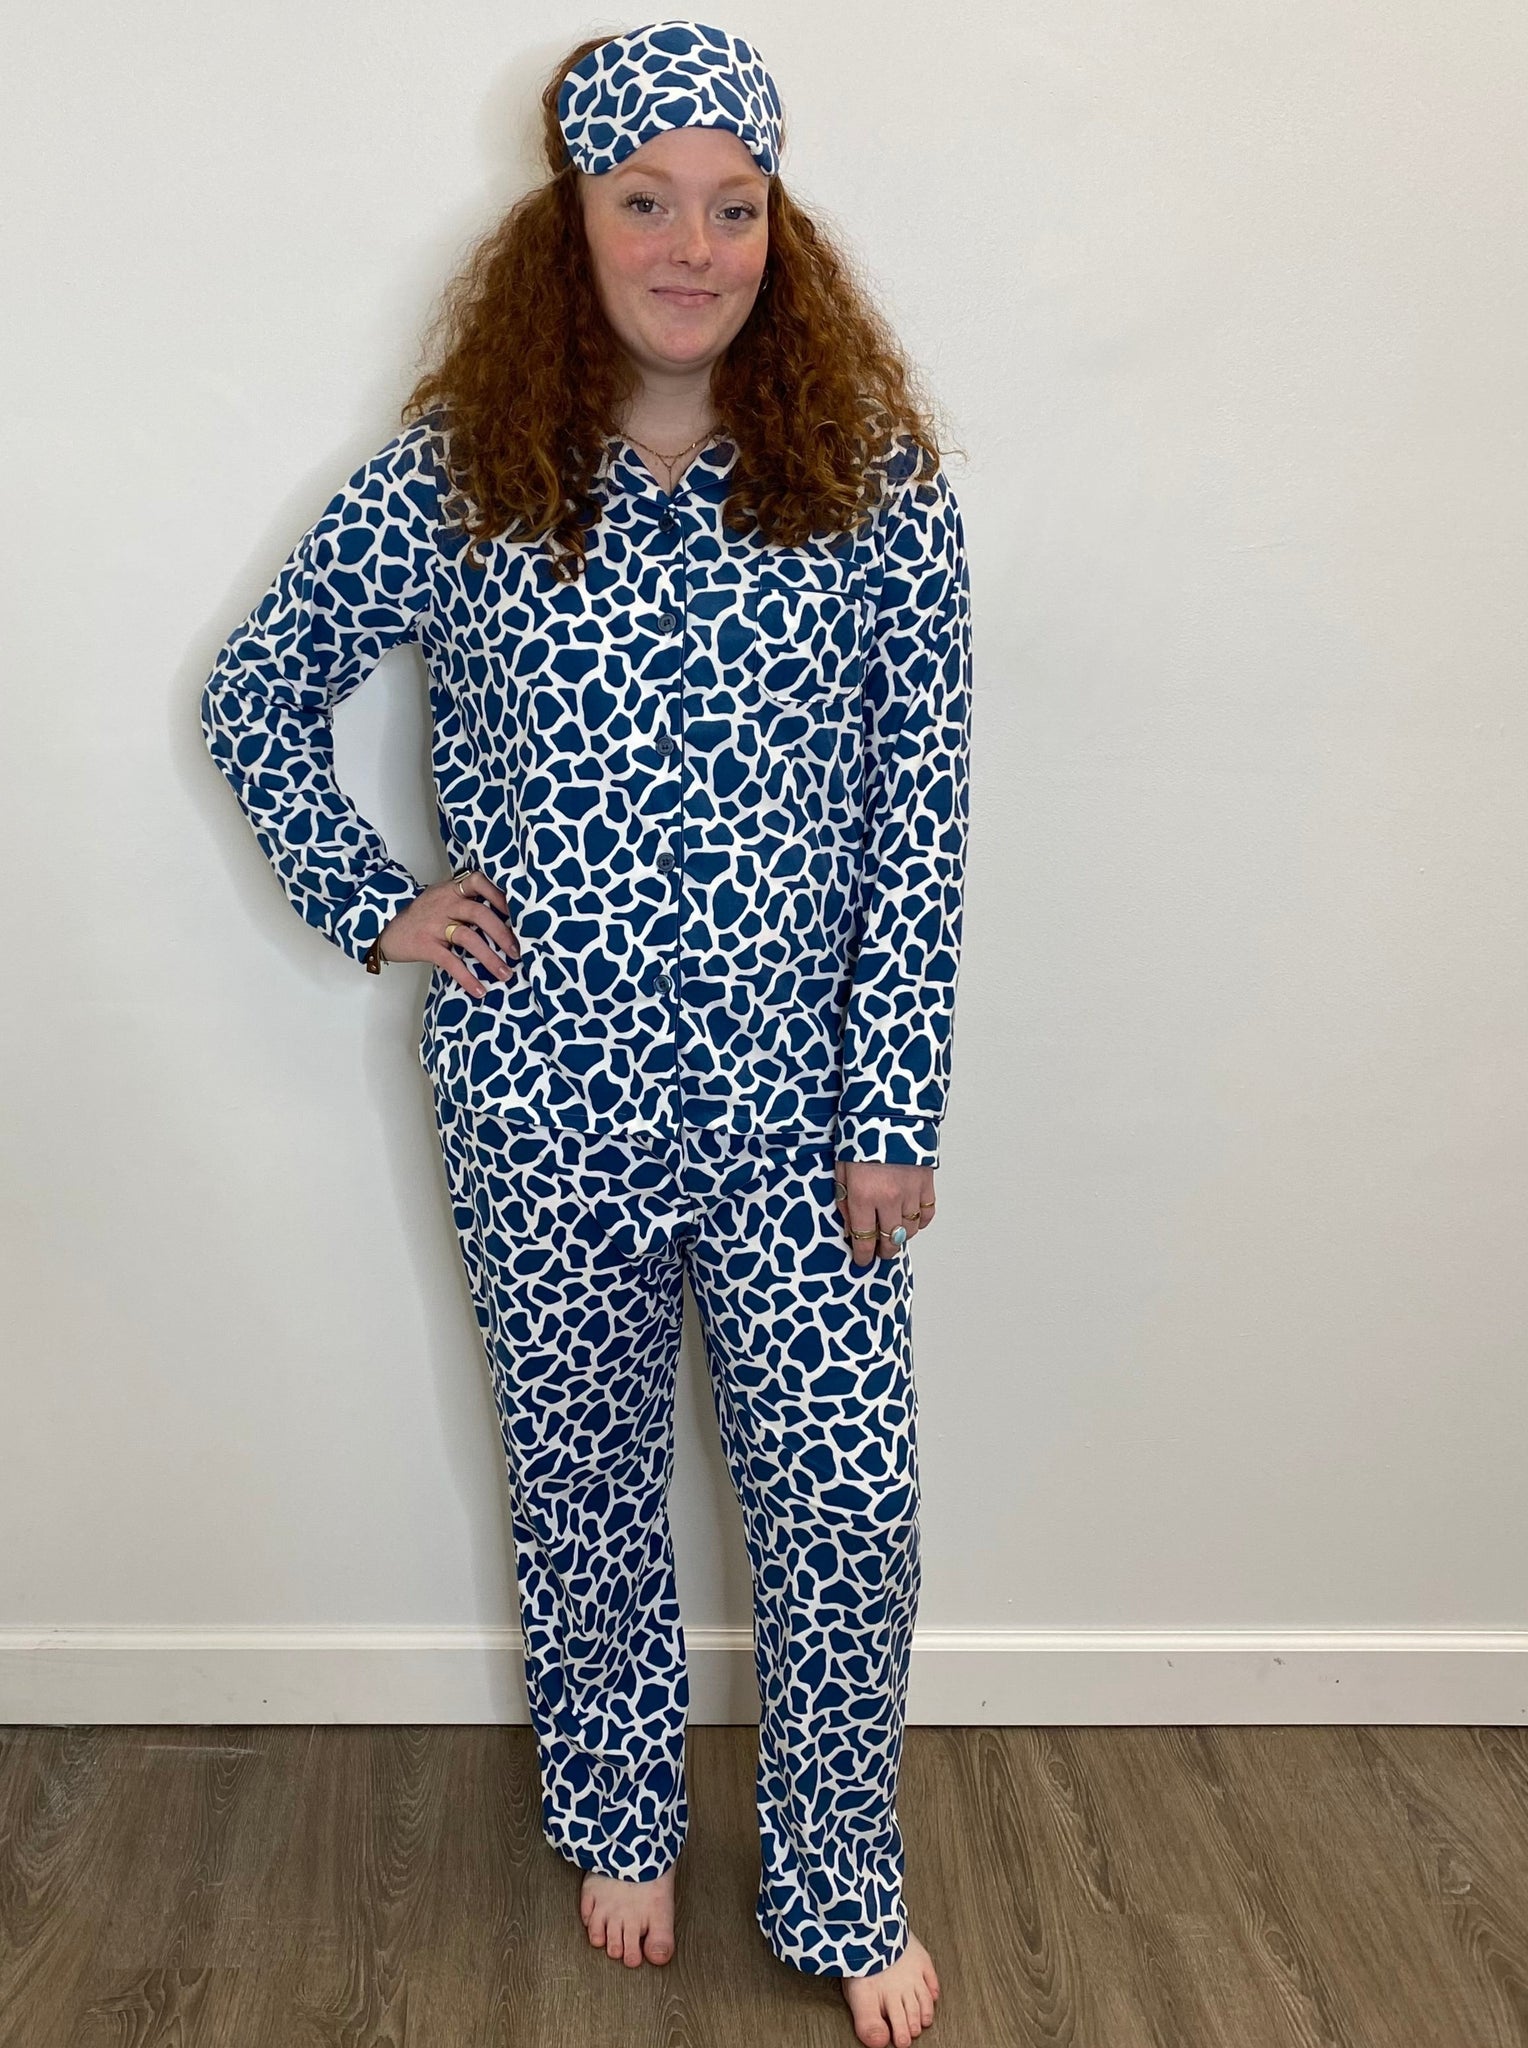 Giraffe Print Pajama Set